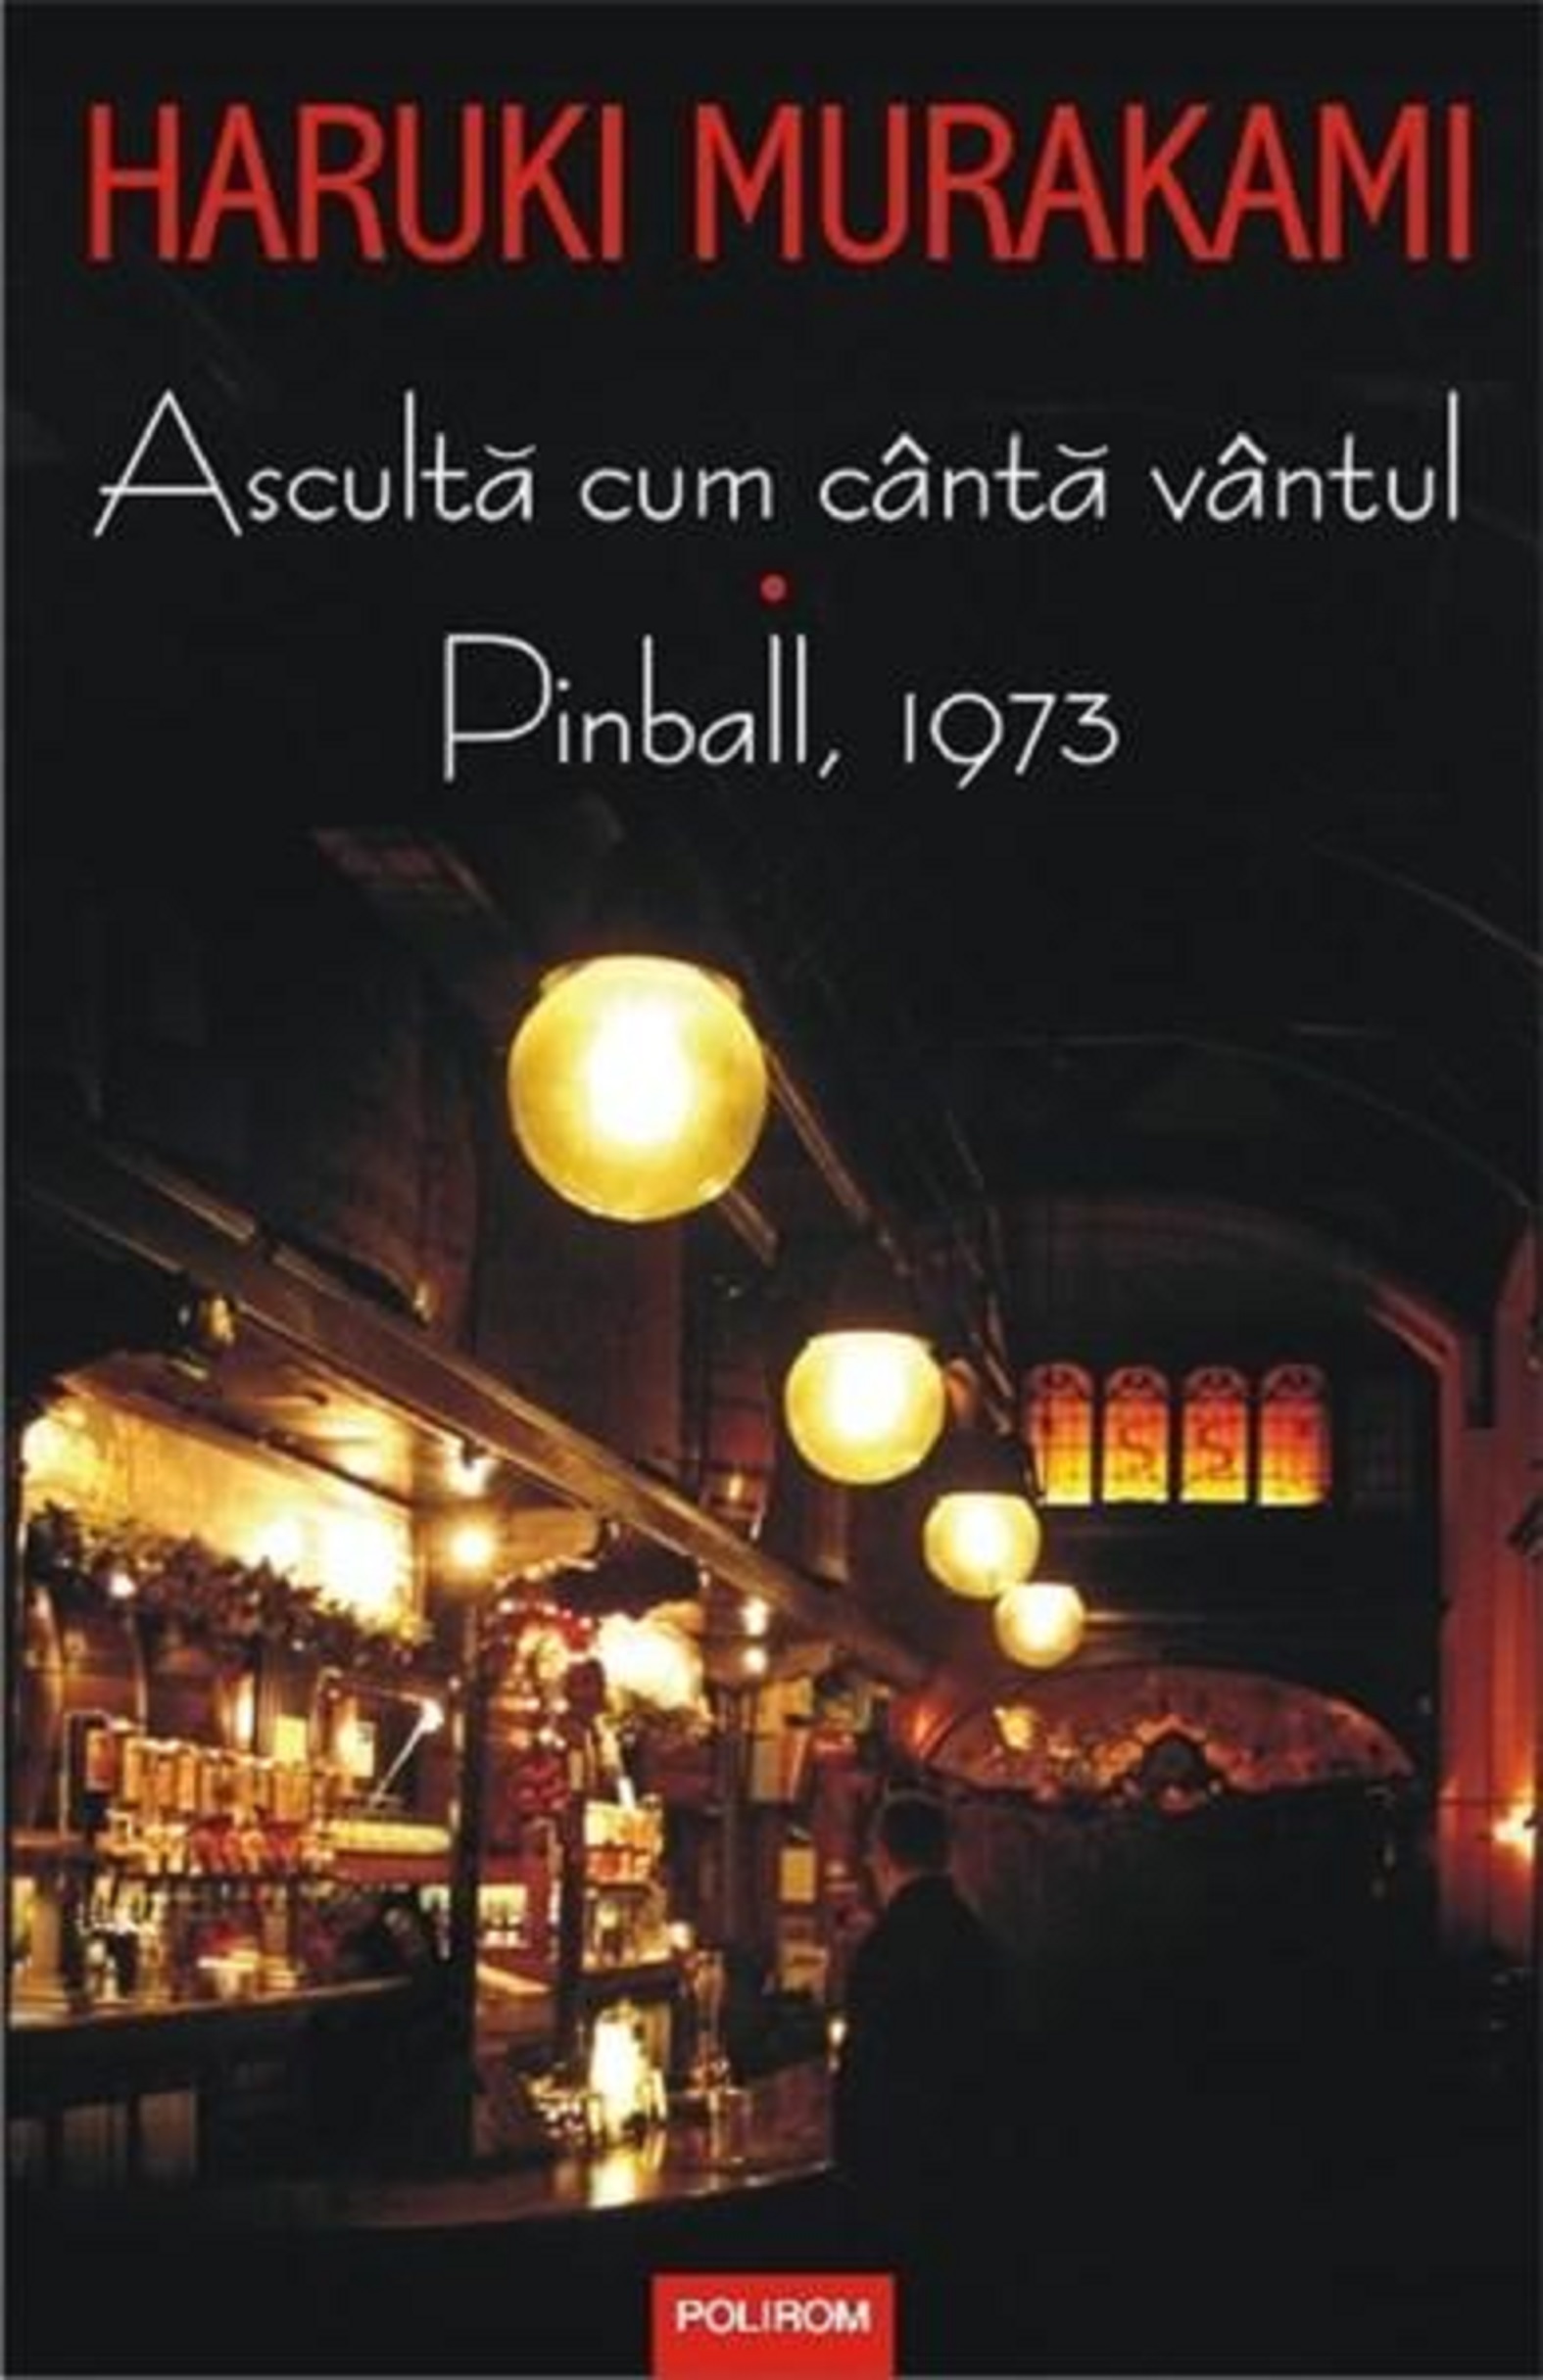 Asculta cum canta vantul. Pinball, 1973 | Haruki Murakami